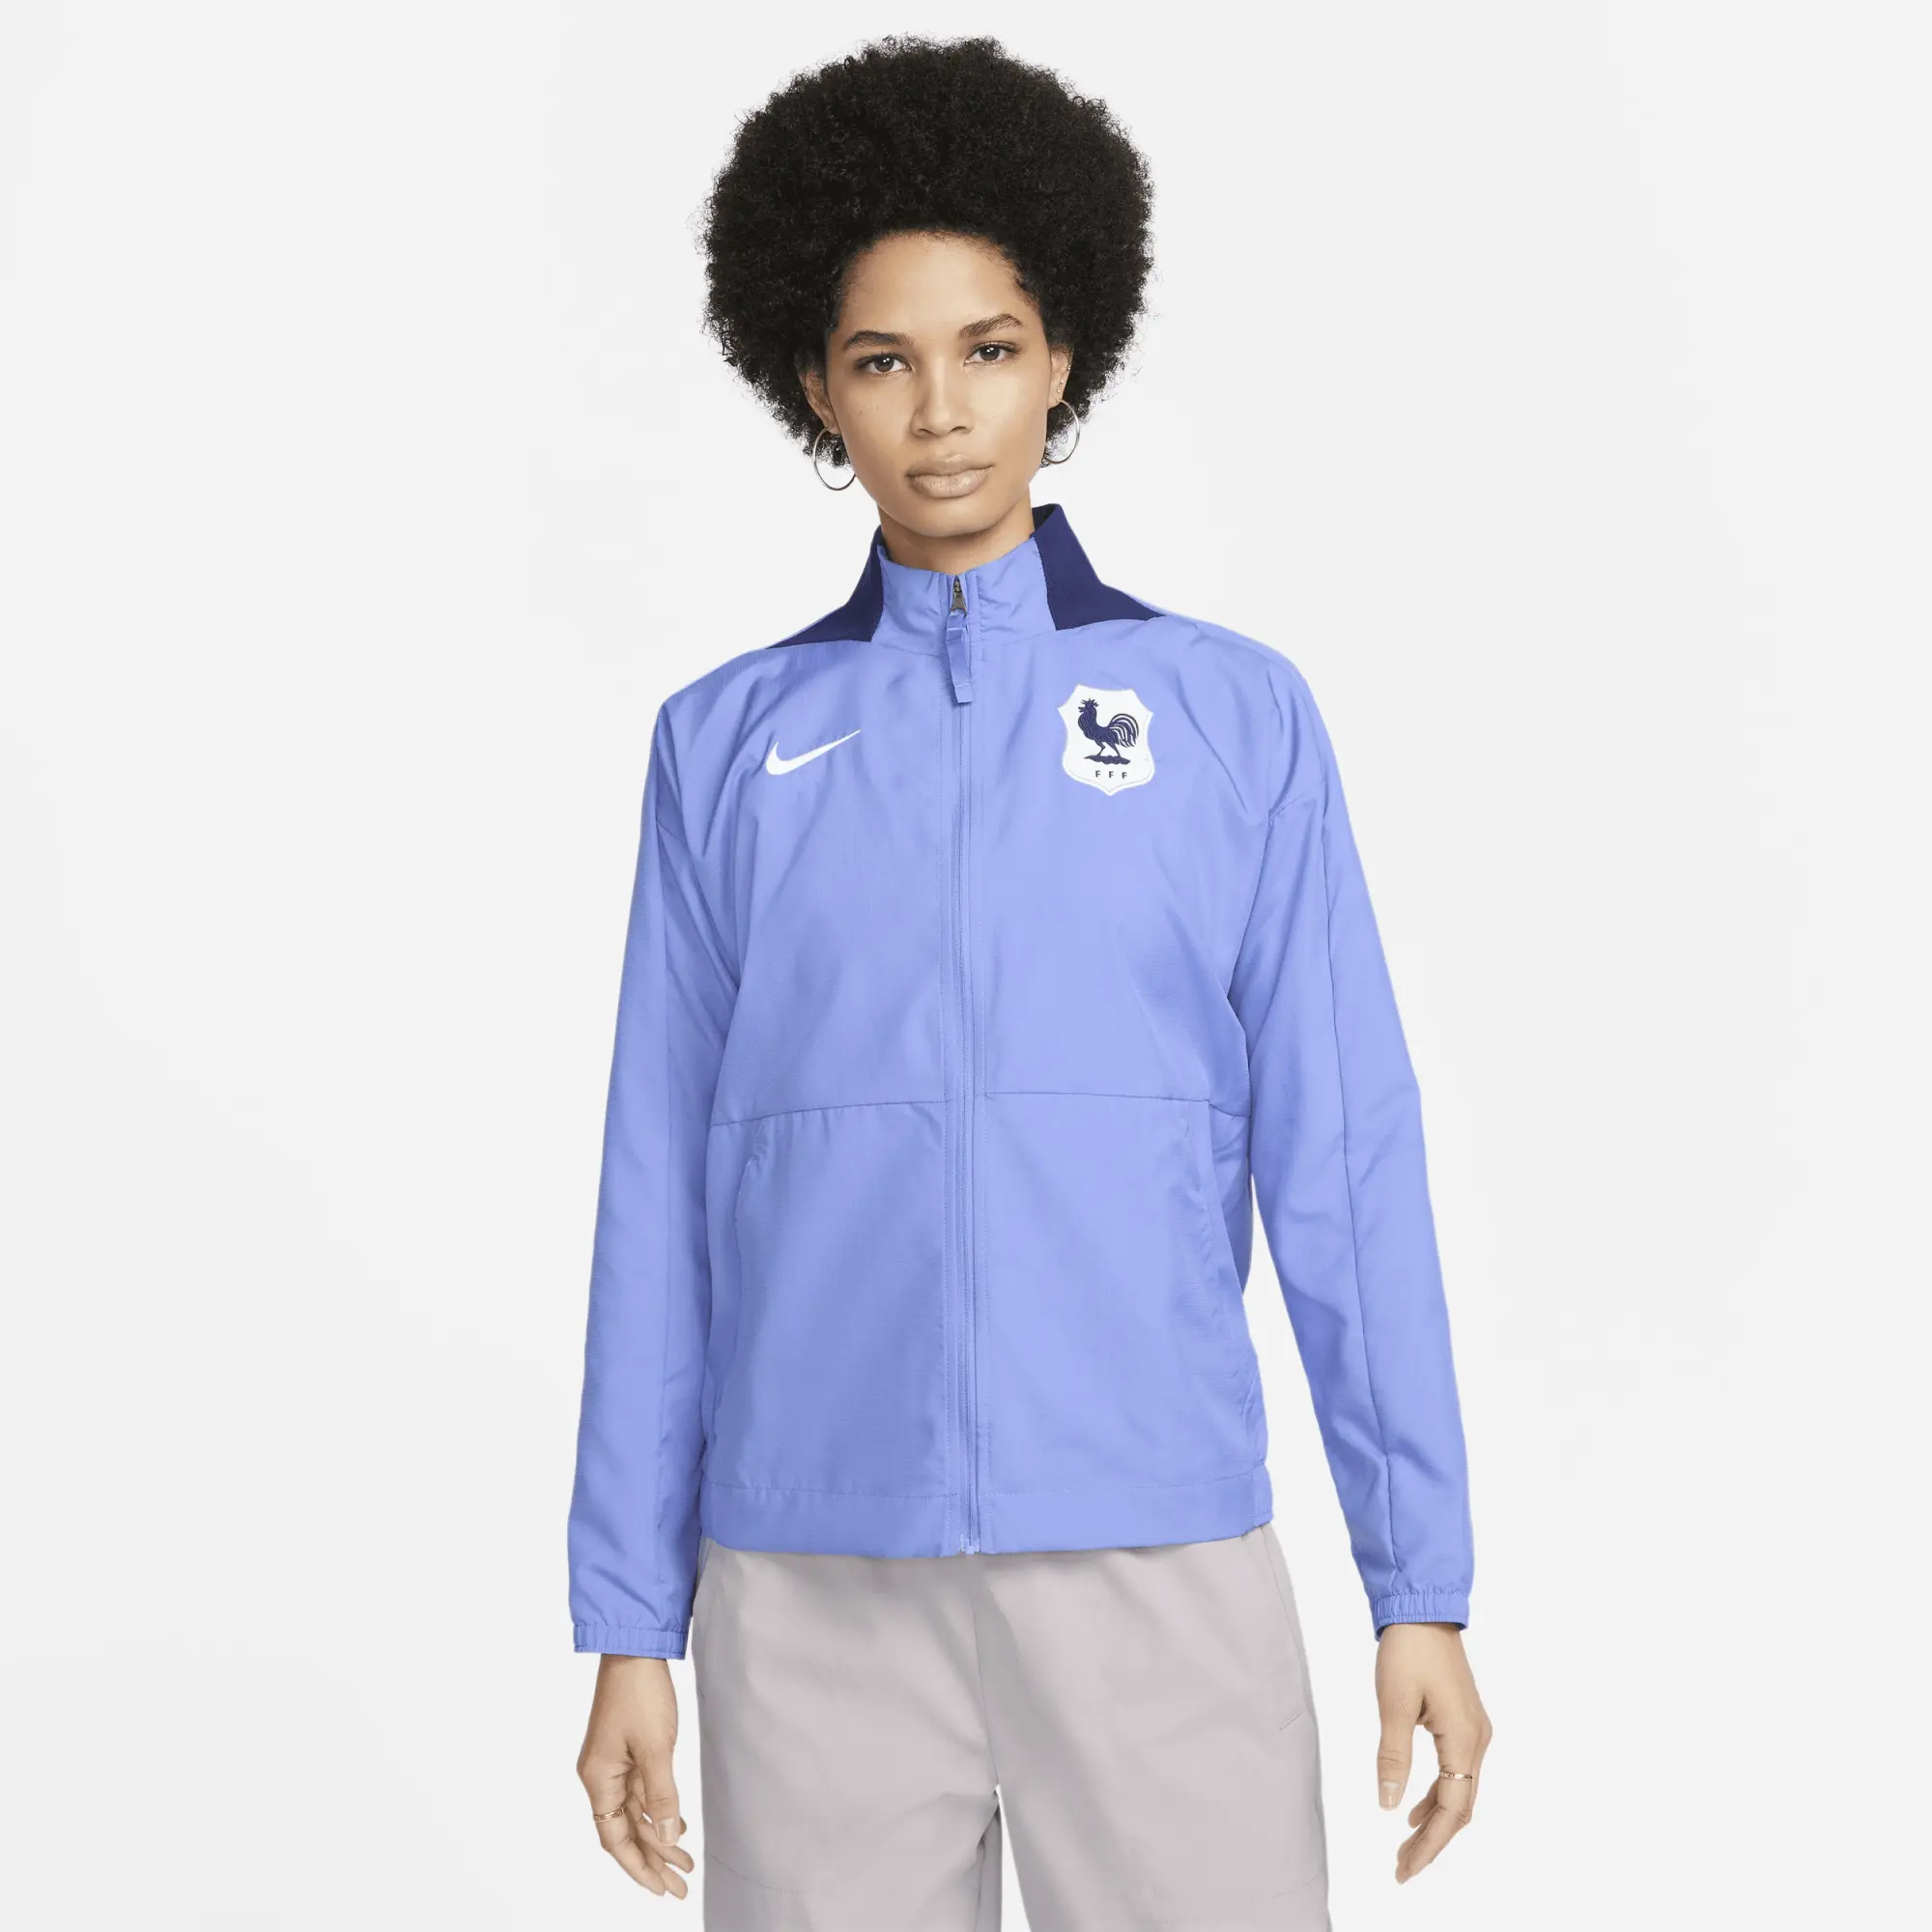 FFF Women's Nike Dri-FIT Anthem Football Jacket - Blue